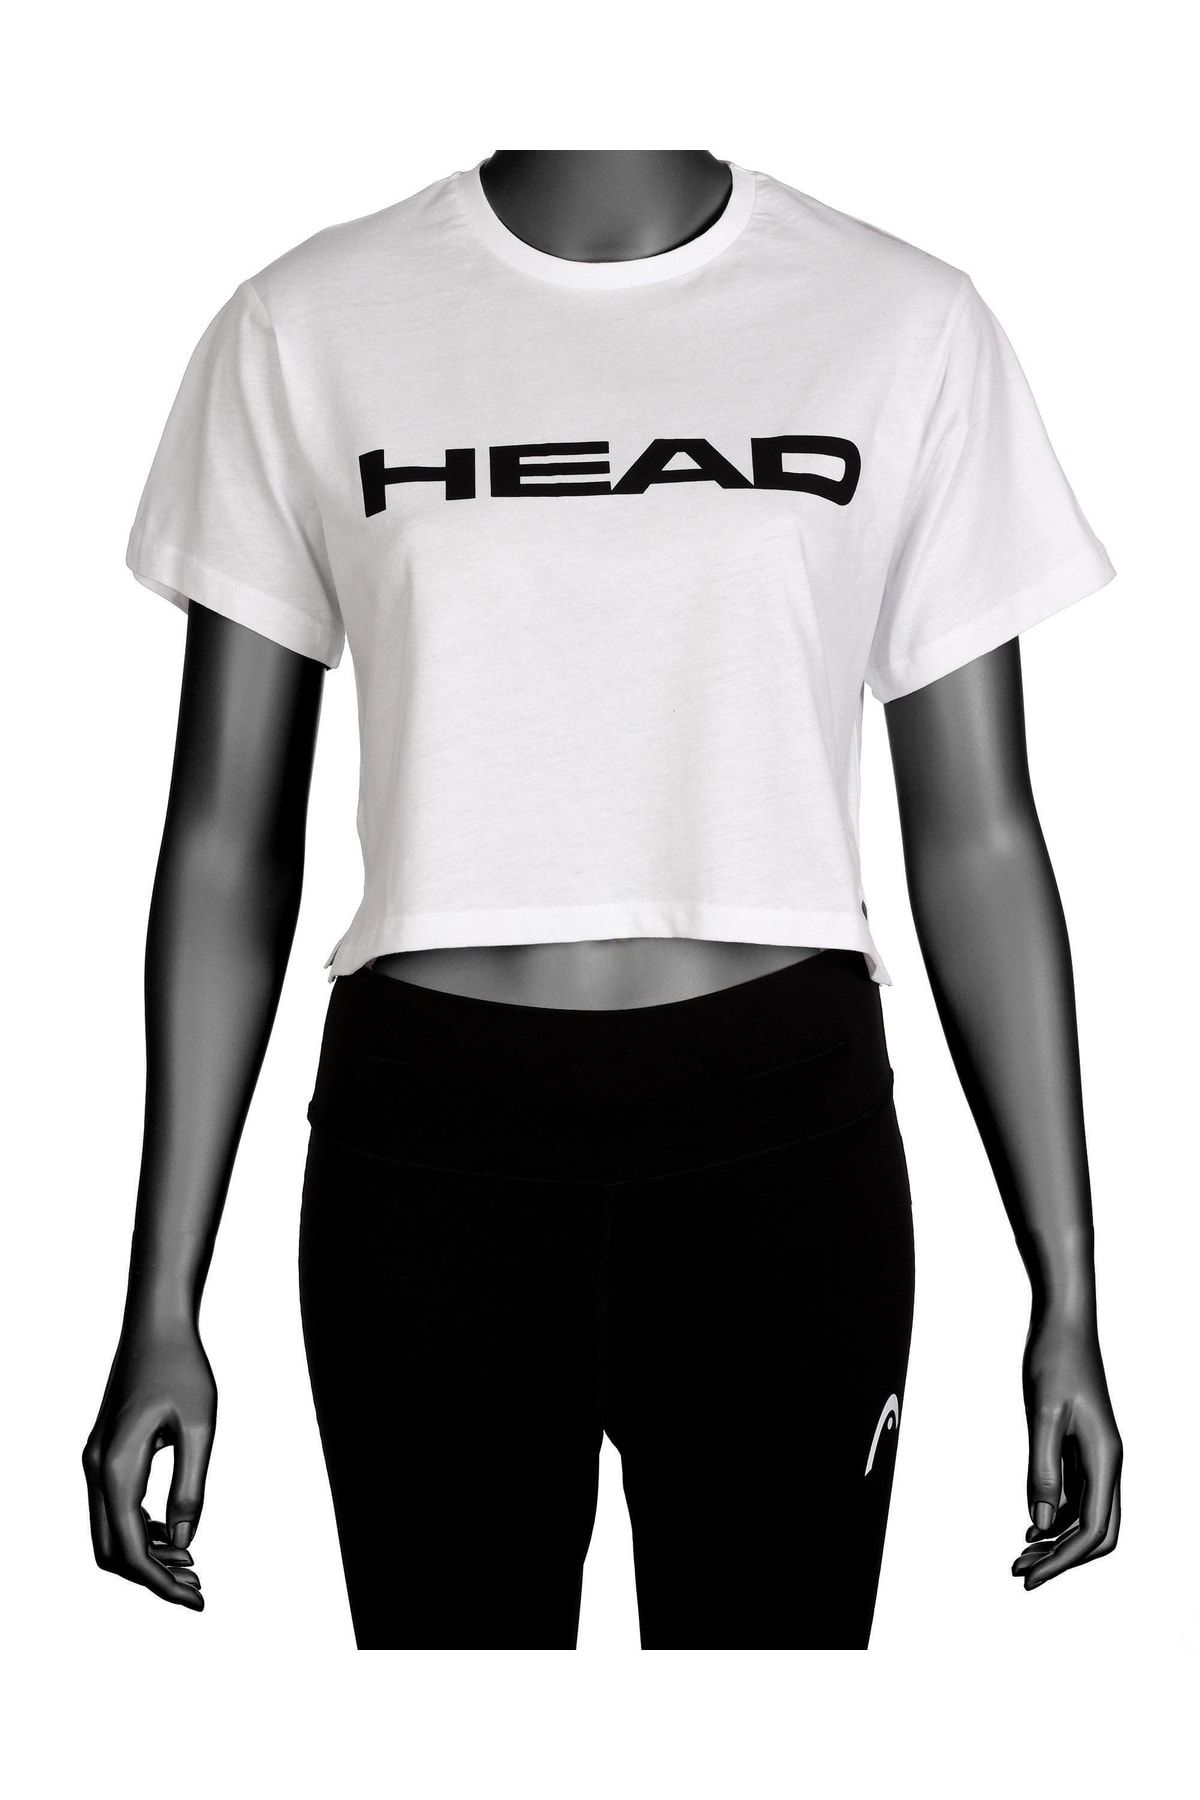 Head Kadın Beyaz Logo Baskılı Pamuklu Bisiklet Yaka Spor Şık Croptop Spor T-shirt Tenis Tişört